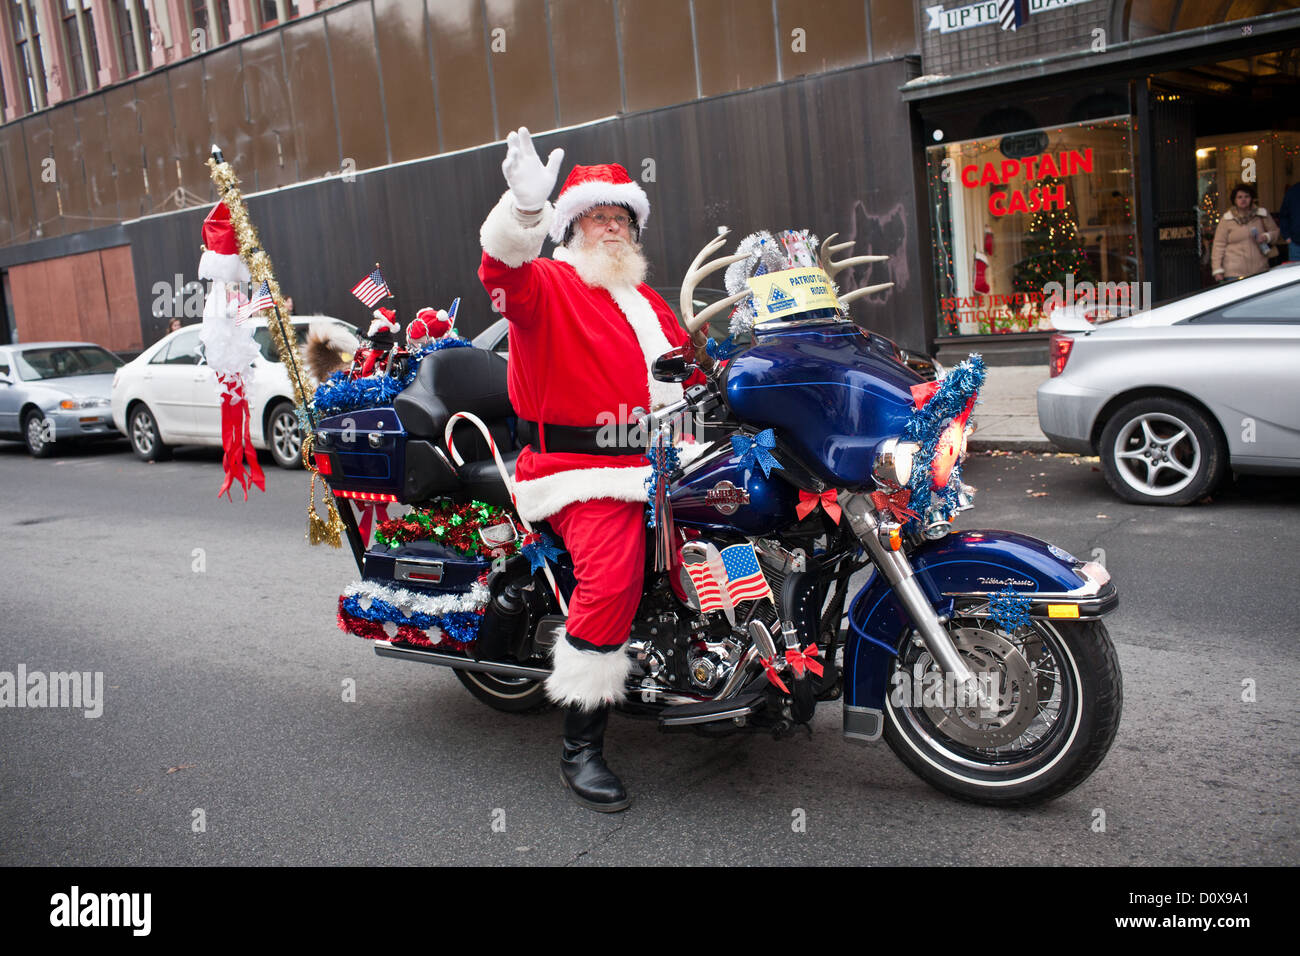 Auguri Di Natale Harley Davidson.Babbo Natale Vittoriano Immagini E Fotos Stock Alamy